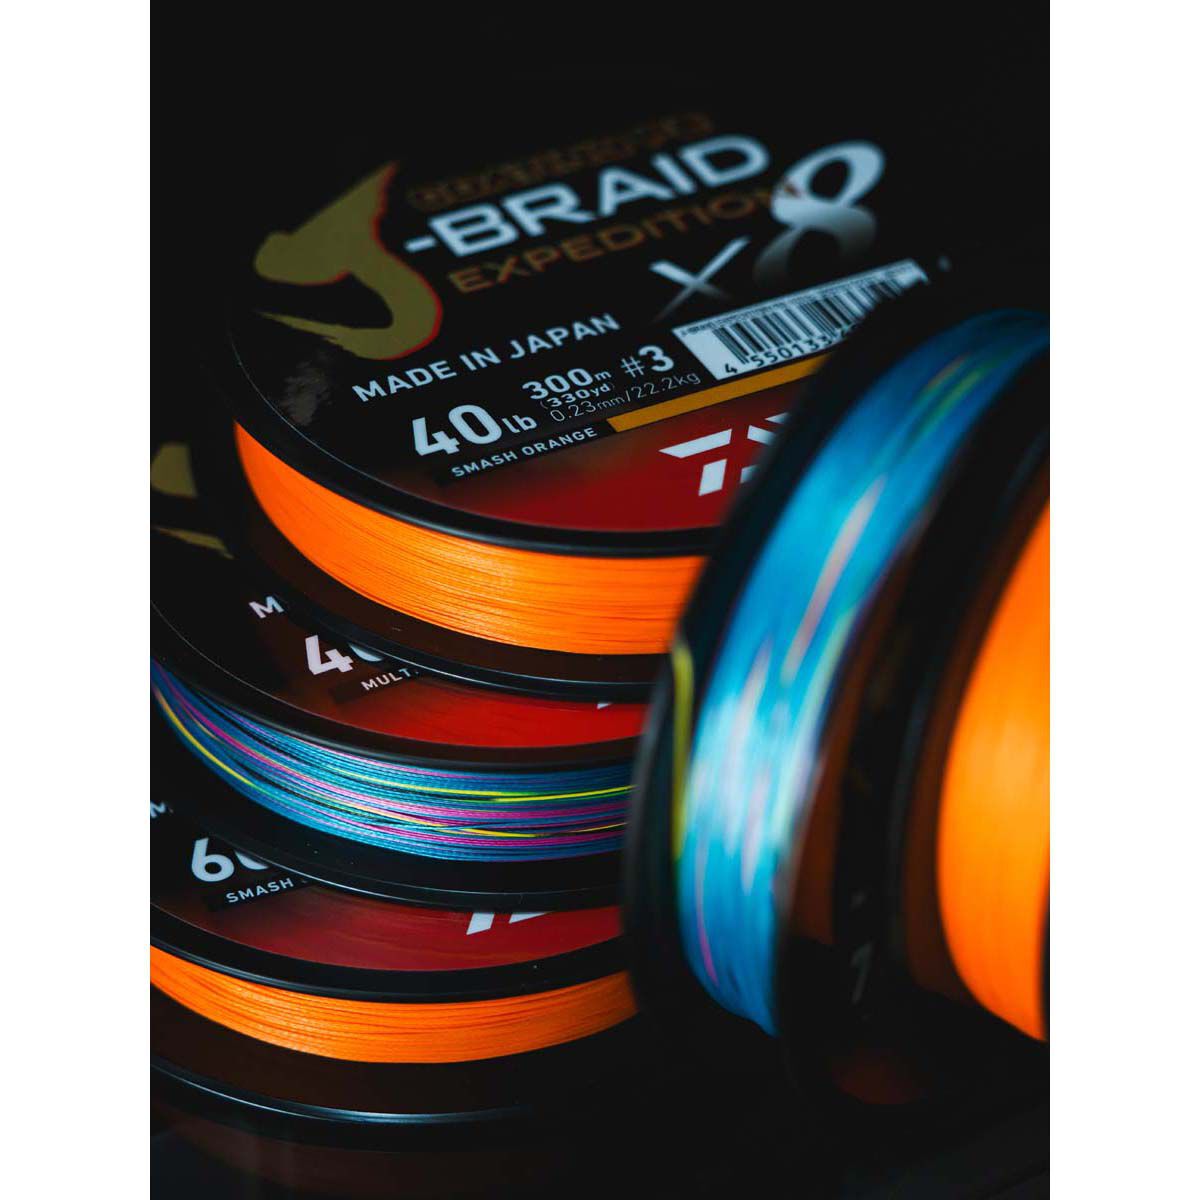 Daiwa J Braid Expedition x8 500m Multi Colour Braid Fishing Line #40lb